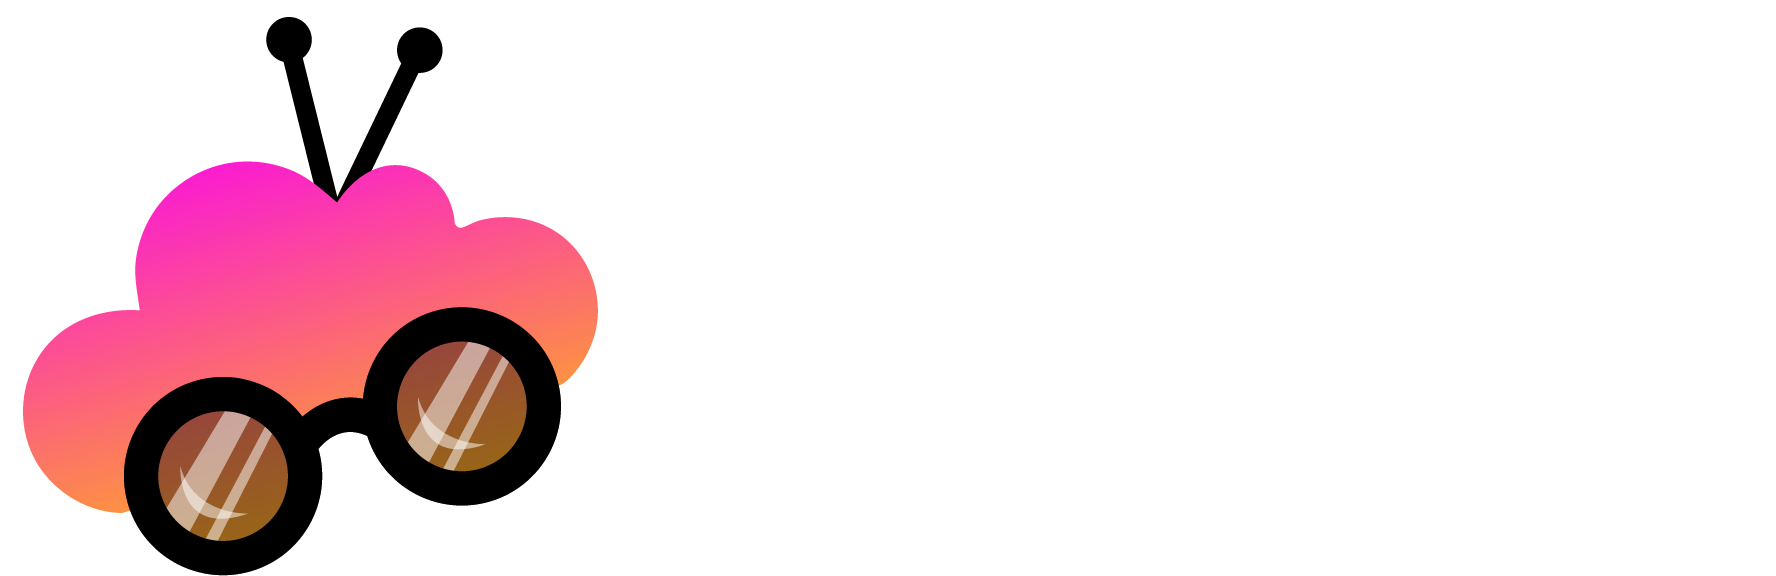 Tv internet bundled